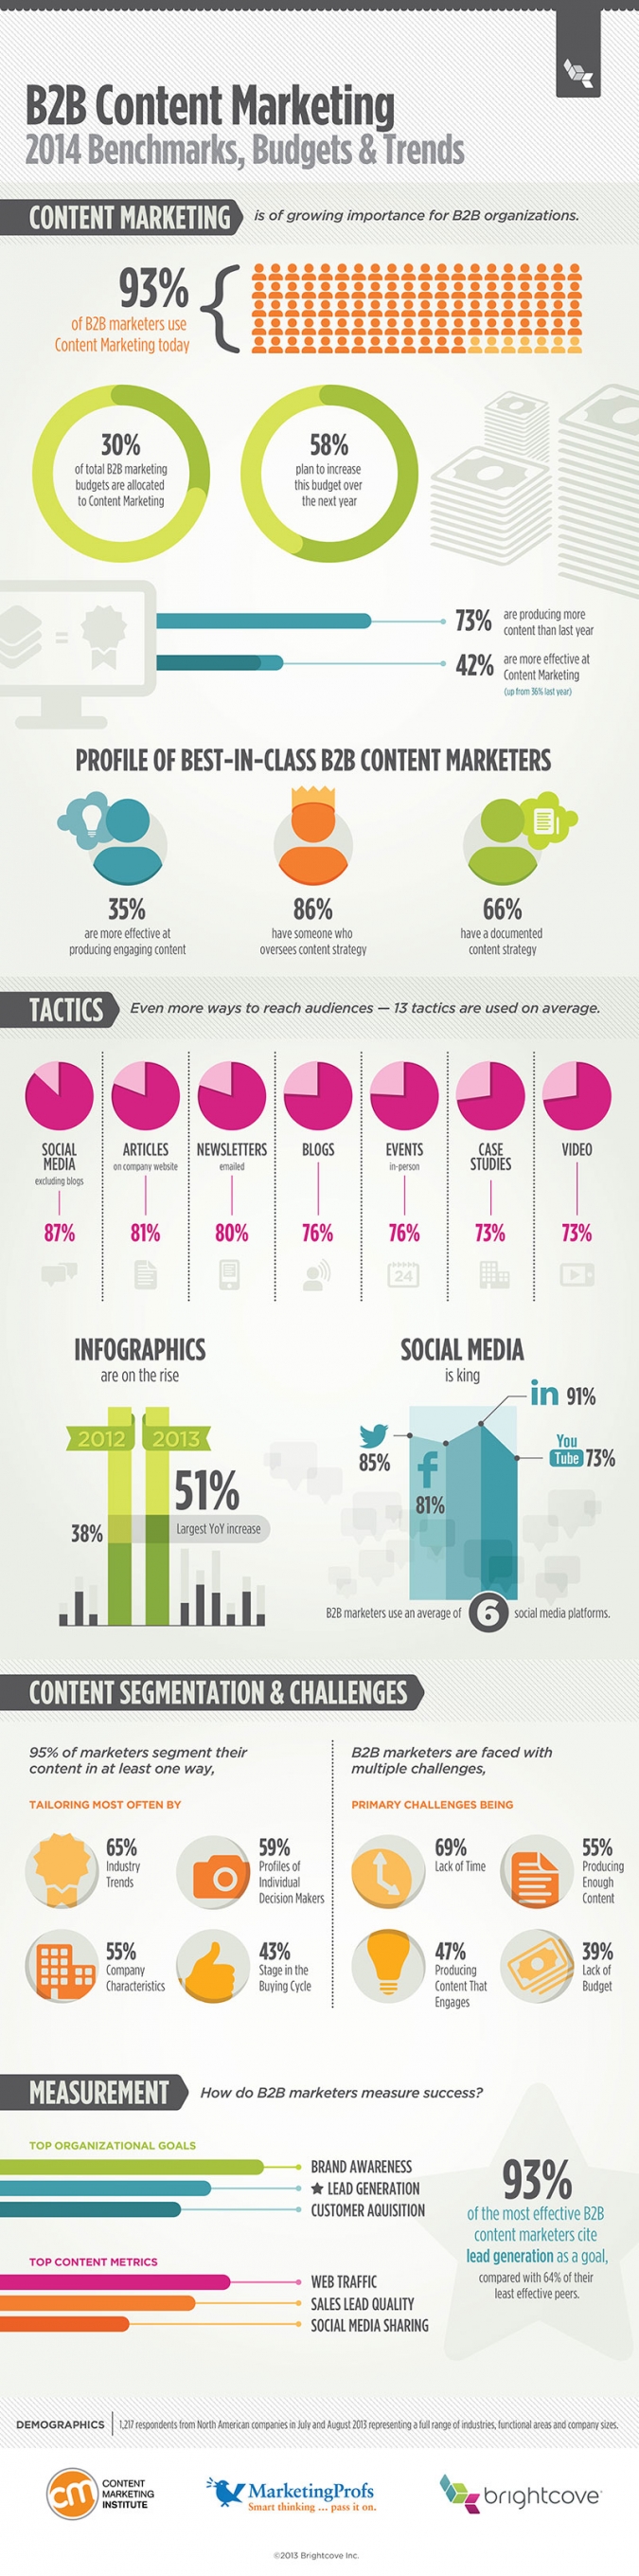 Die Infografik mit den wichtigsten Trends für eure B2B Content Marketing Strategie für 2014.